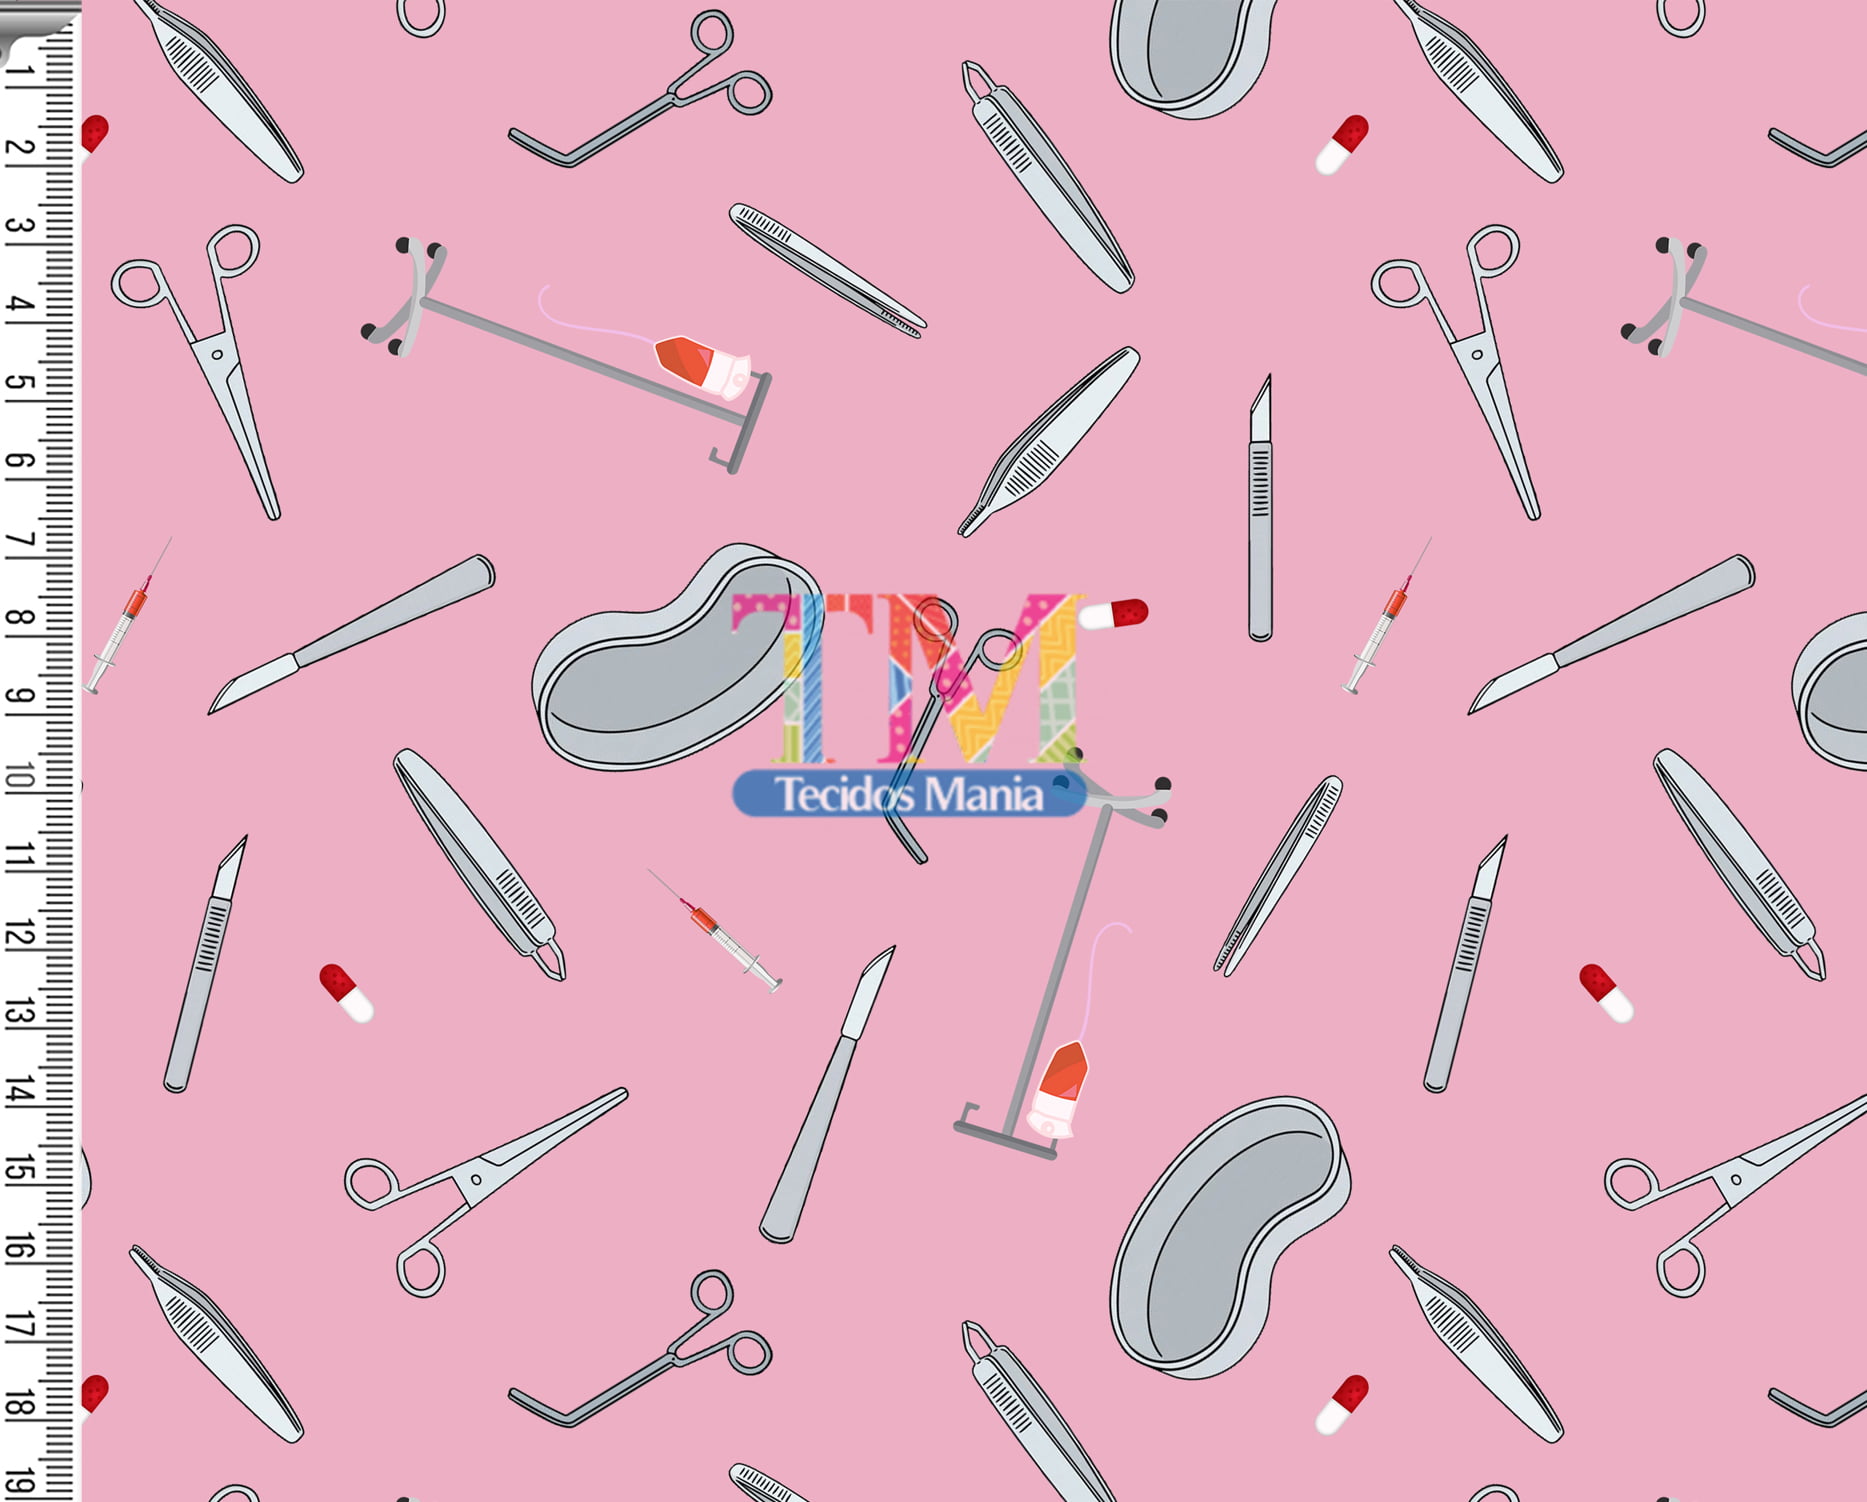 Tecido tricoline, microfibra ou gabardine estampado - Instrumentos Cirugicos - Fundo rosa